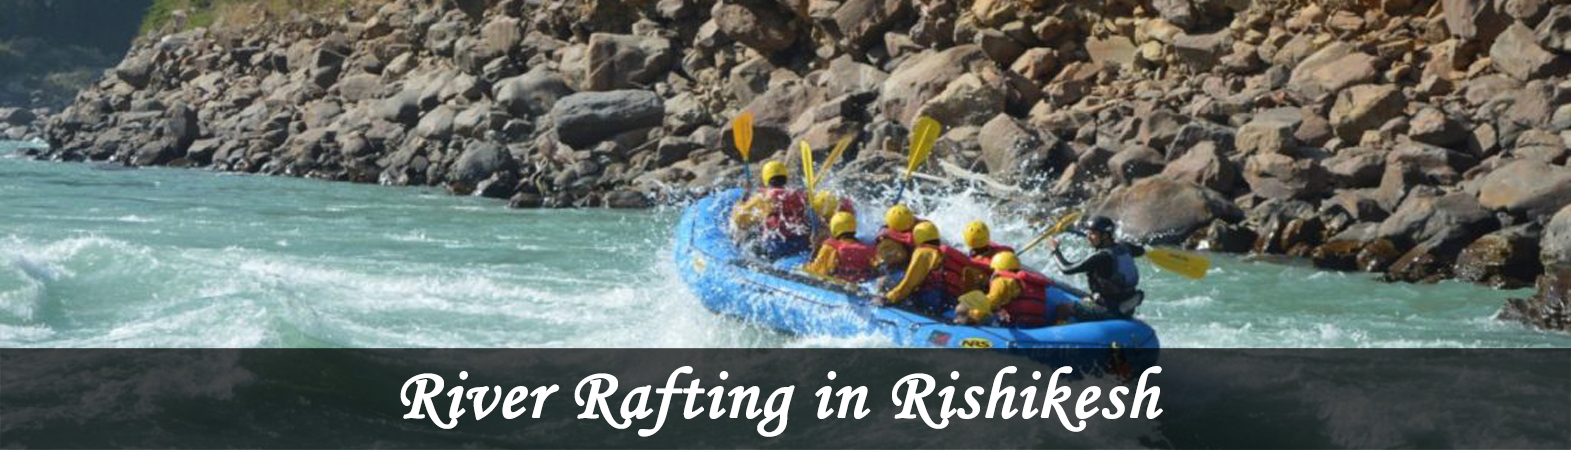 River Rafting in Rishikesh, Rishikesh River Rafting